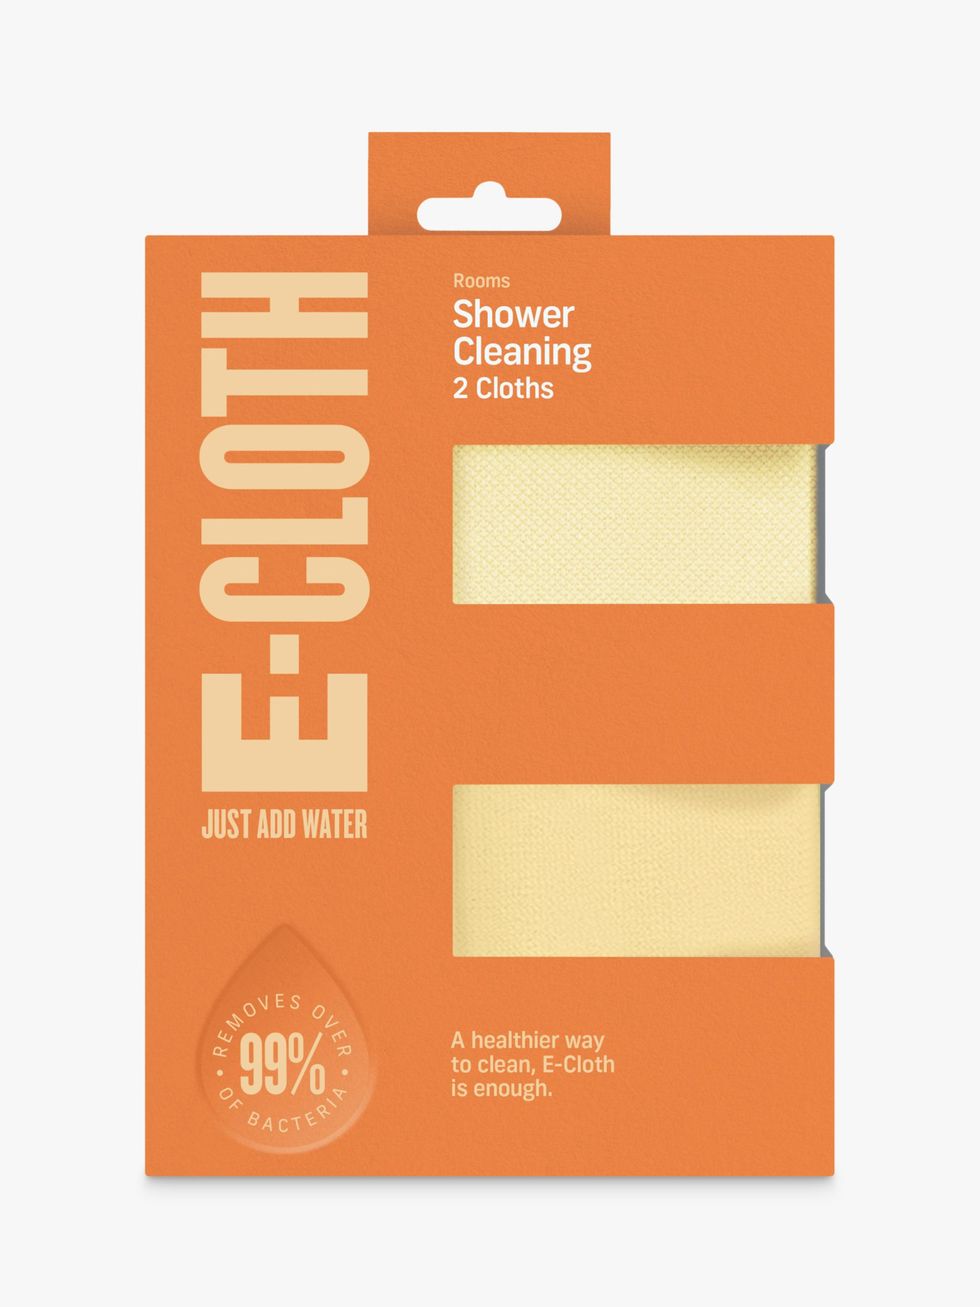 e-cloth Shower Pack